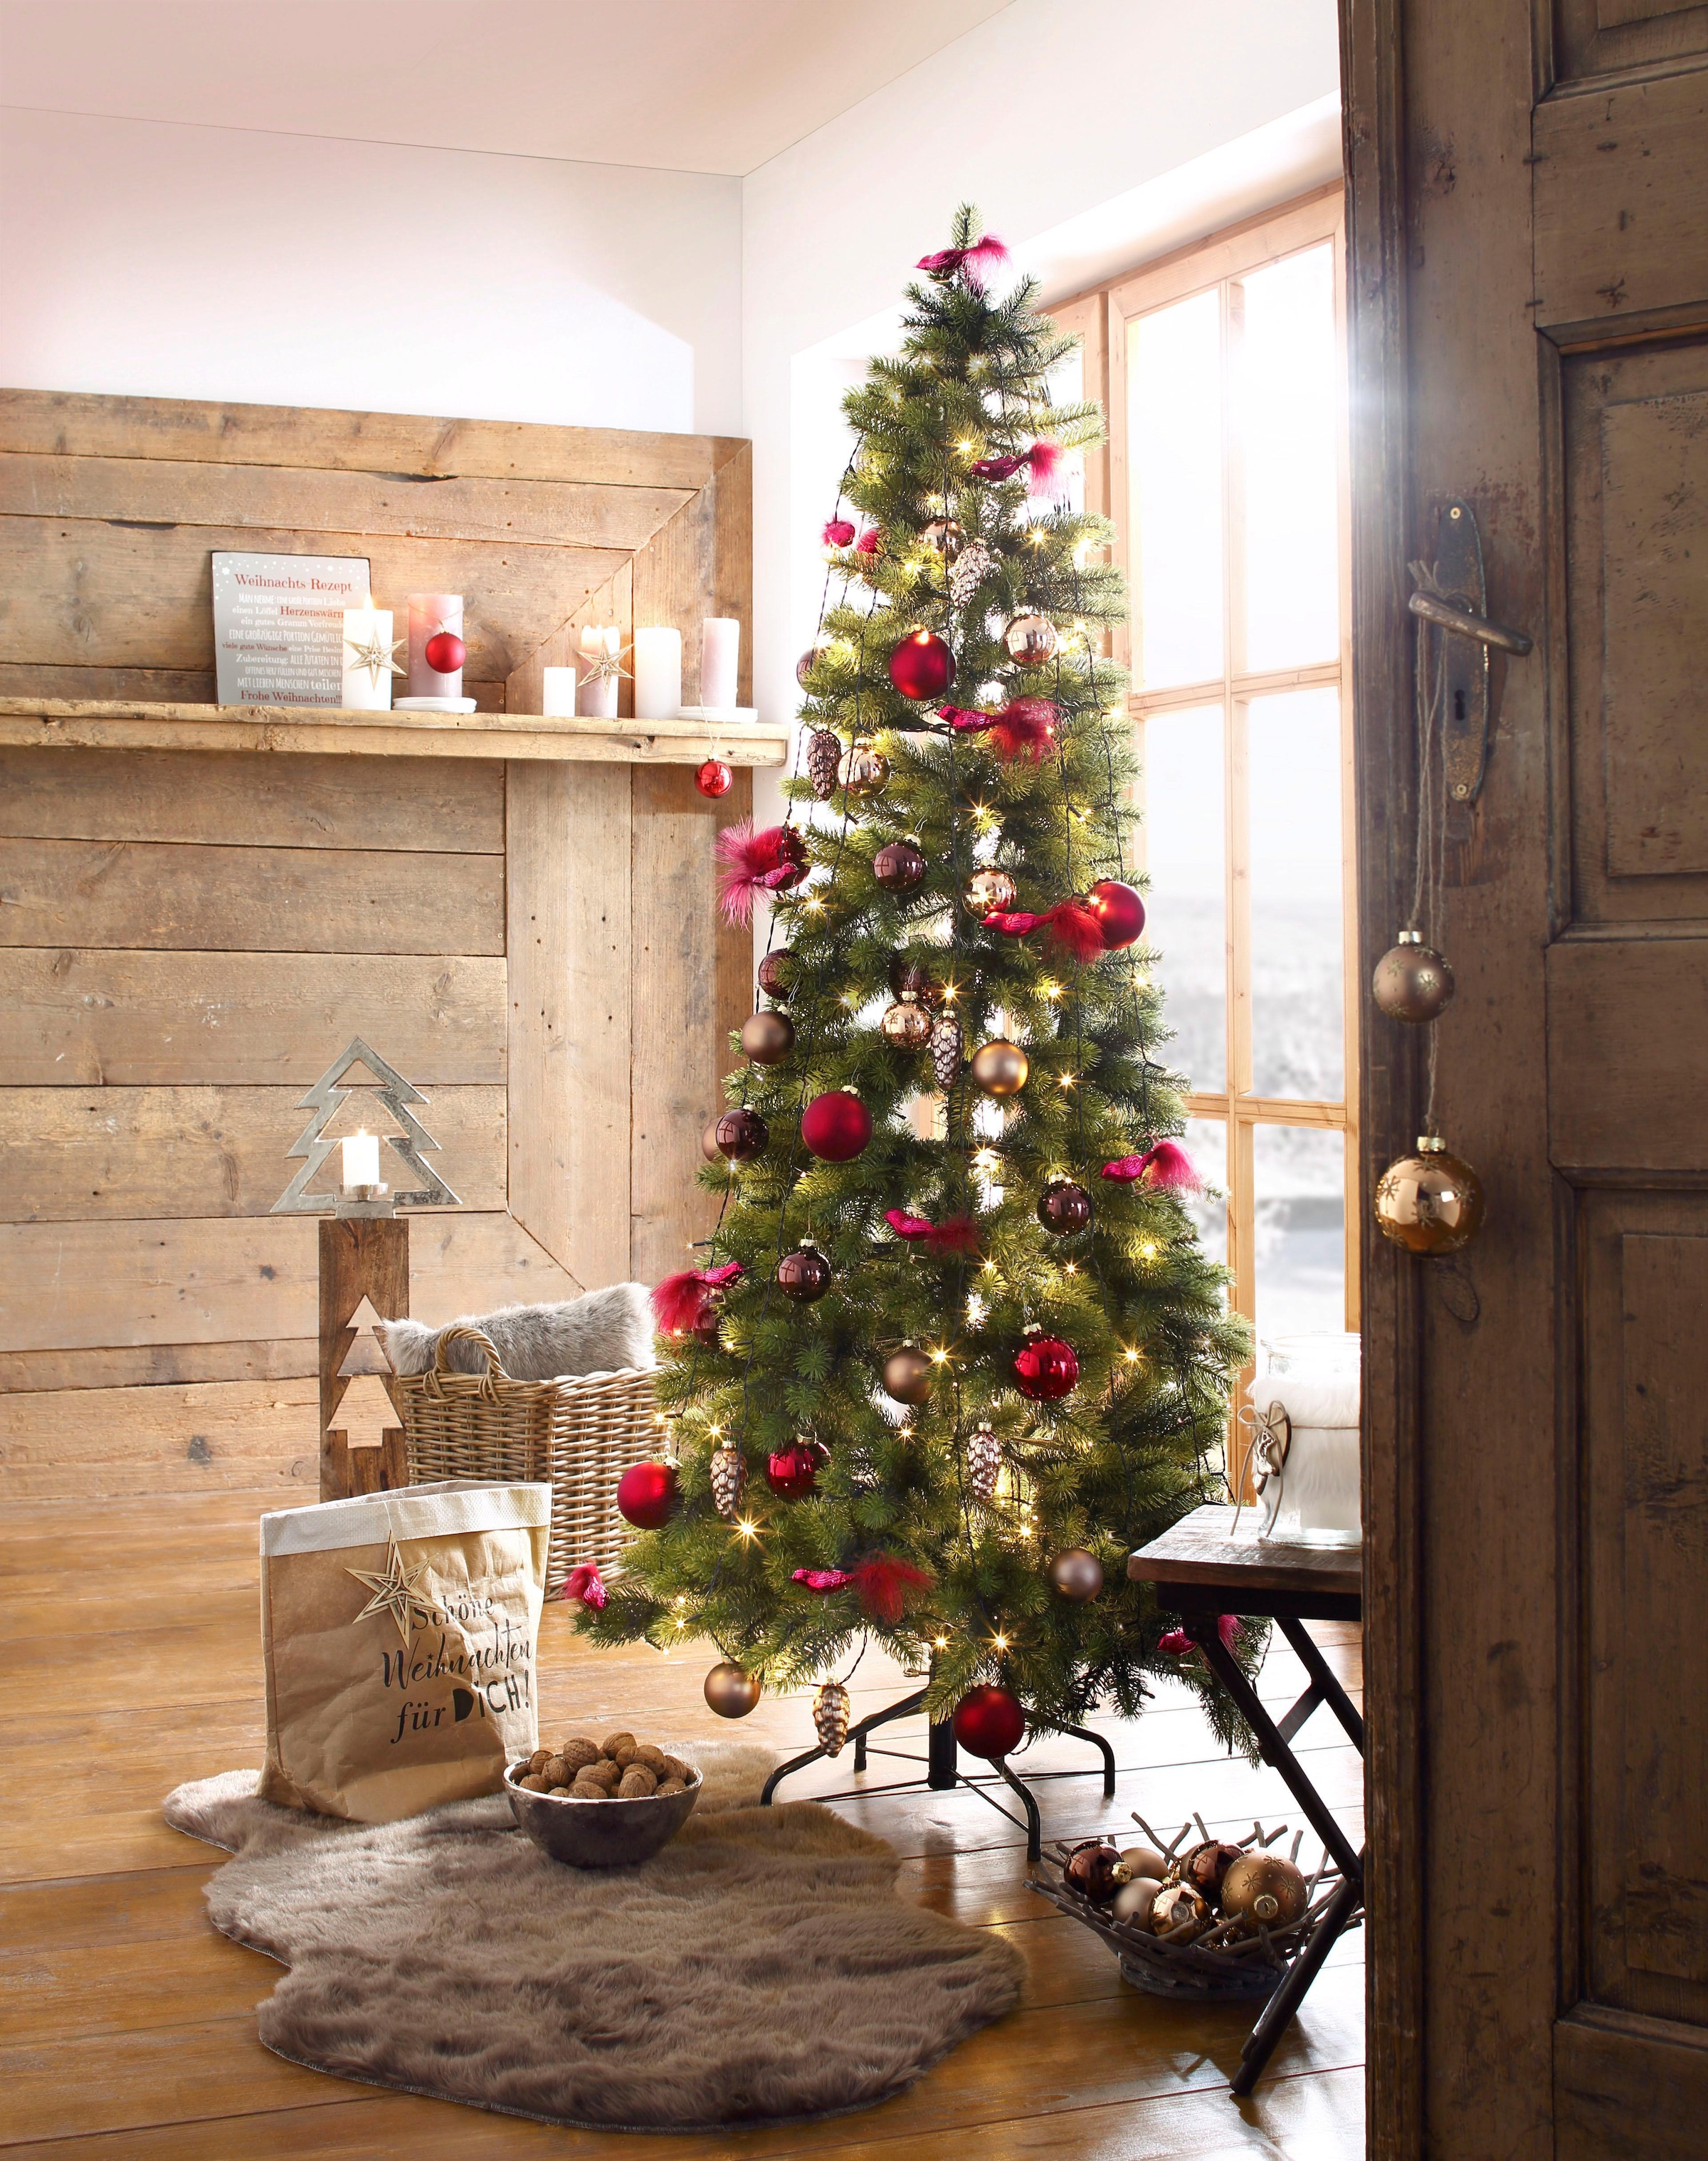 Creativ deco Künstlicher Weihnachtsbaum »Weihnachtsdeko aussen, künstlicher Christbaum, Tannenbaum«, in schlanker Form